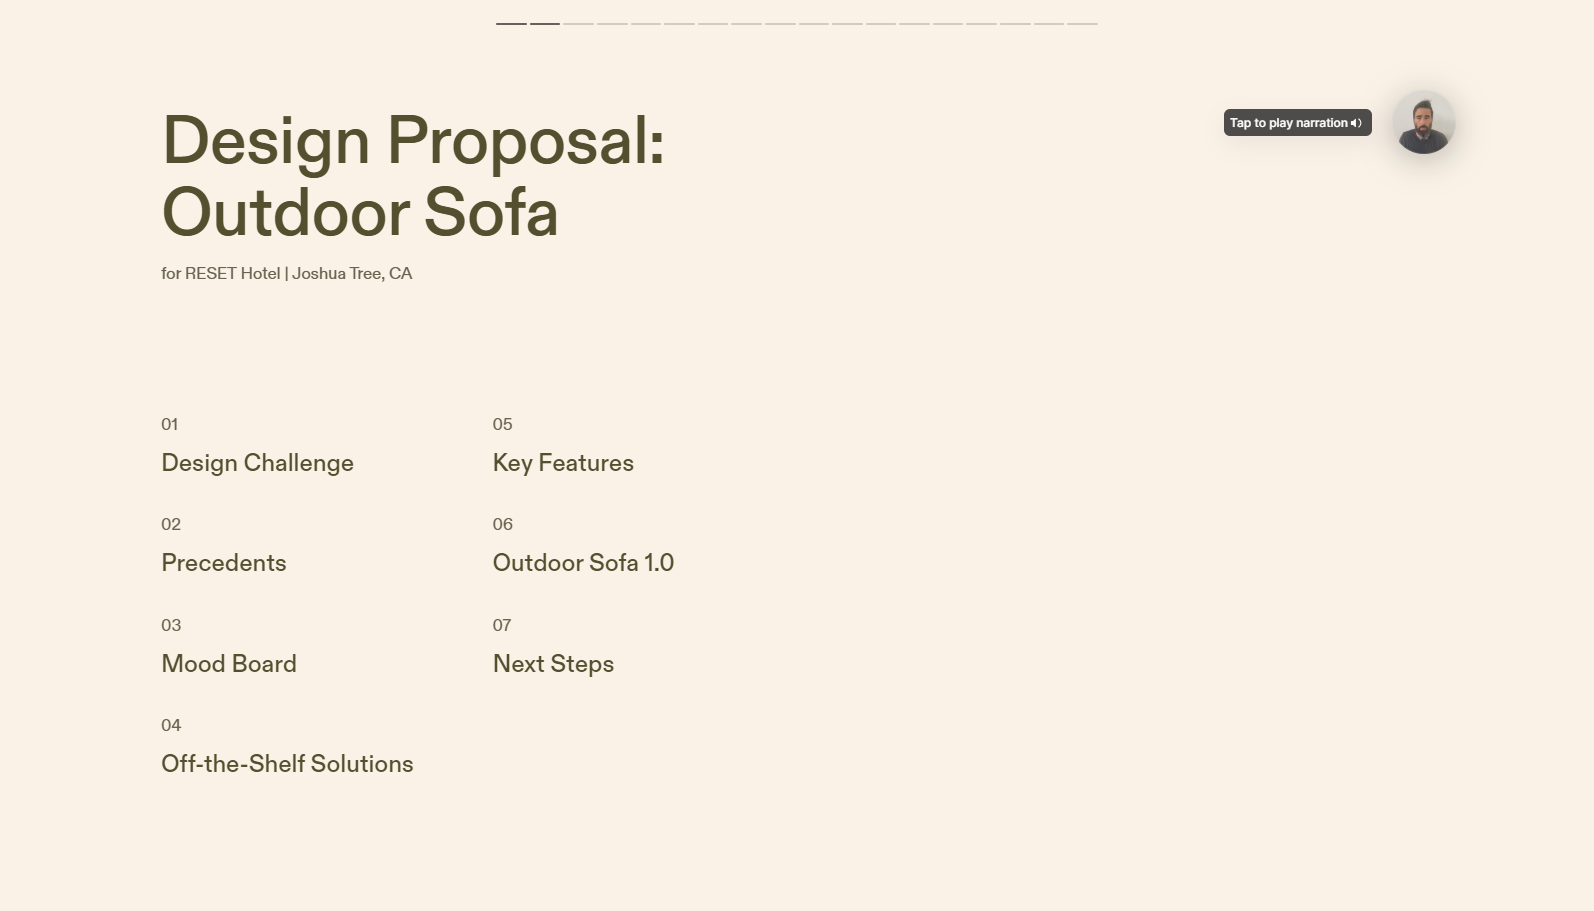 Design Proposal - Ben Uyeda